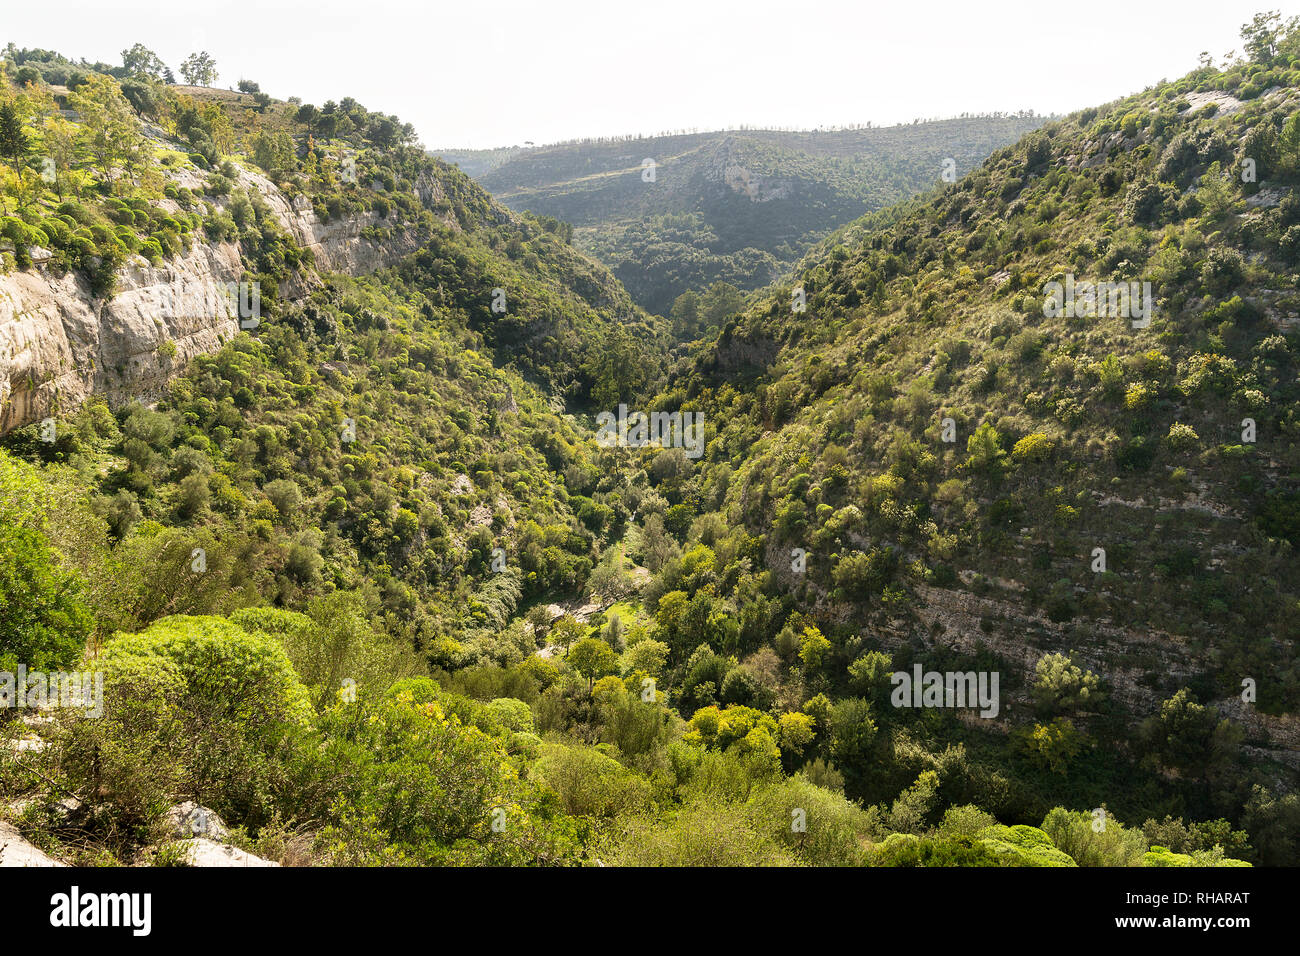 Los paisajes naturales de Cava Carosello en Noto - Sicilia - Italia Foto de stock